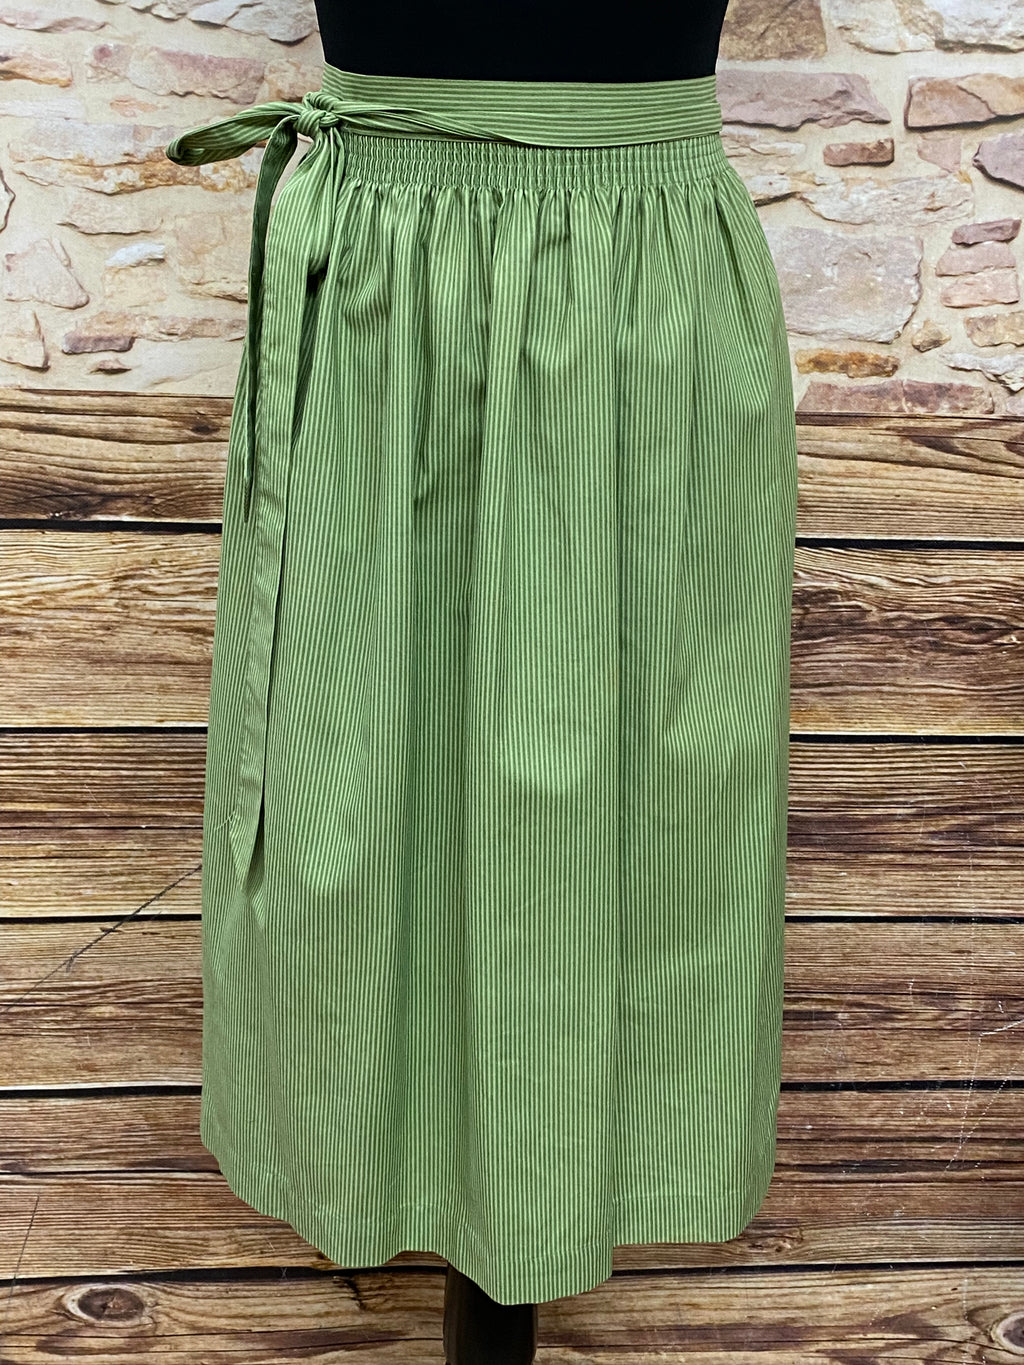 Mittellange Vintage Dirndl-Schürze für Trachtenkleid in grün gemustert 76 cm